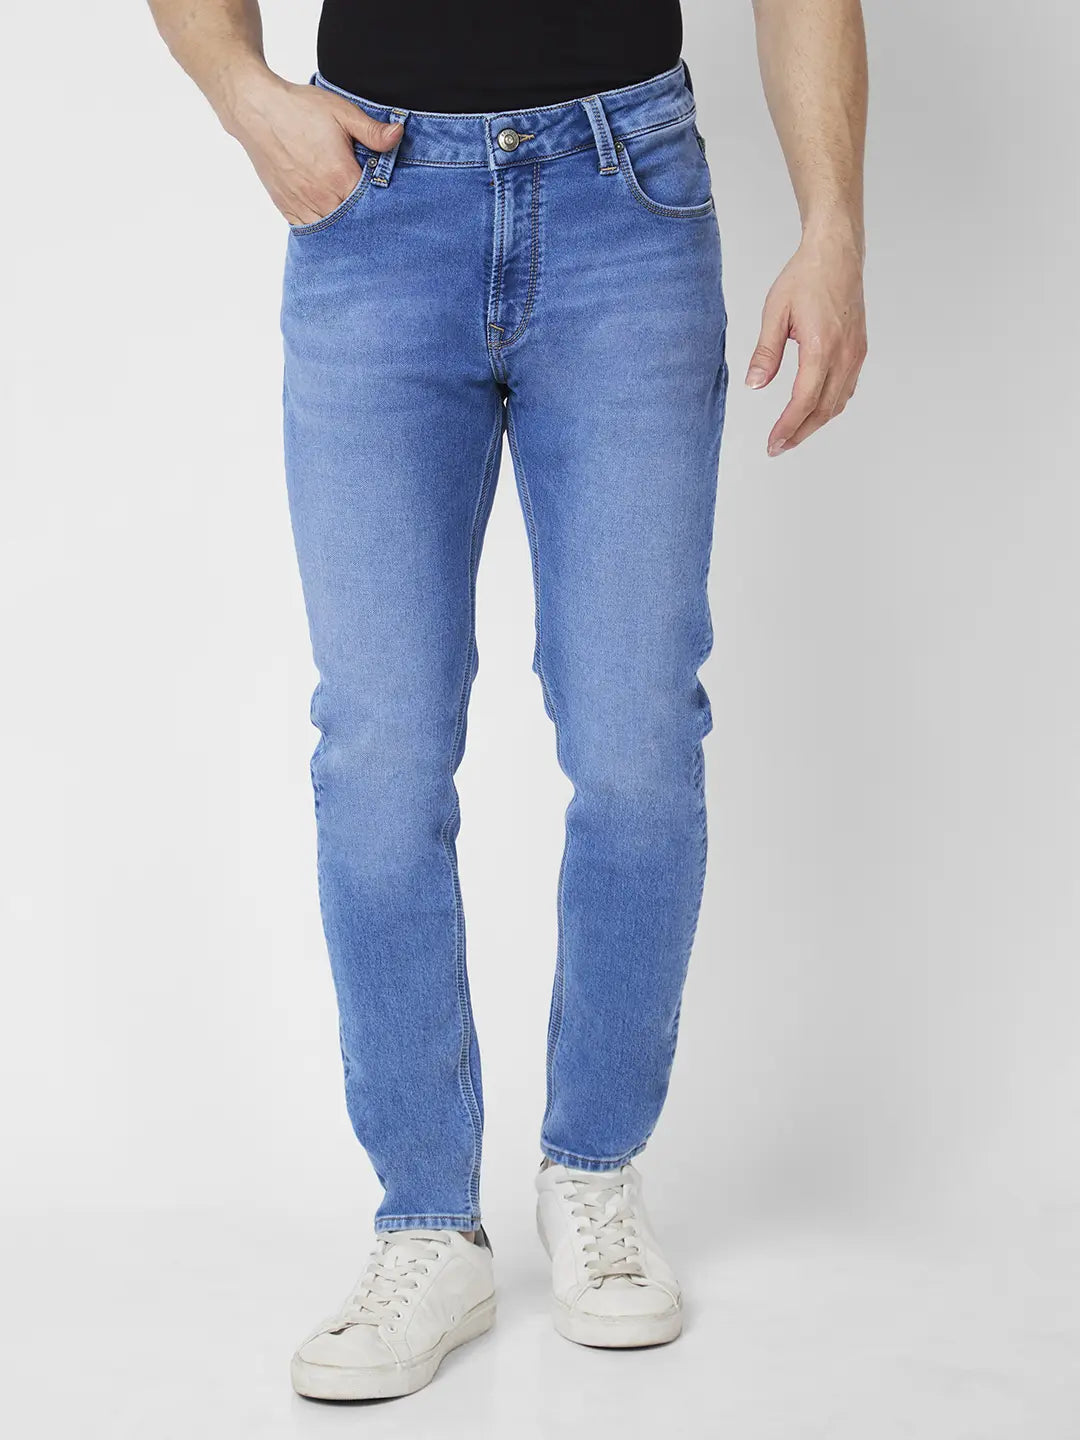 Women Low Rise Jeans Flare Pants Wide Leg Denim Jeans Loose Baggy Cargo  Pants with Flap Pockets Y2K EGirl Streetwear - Walmart.com